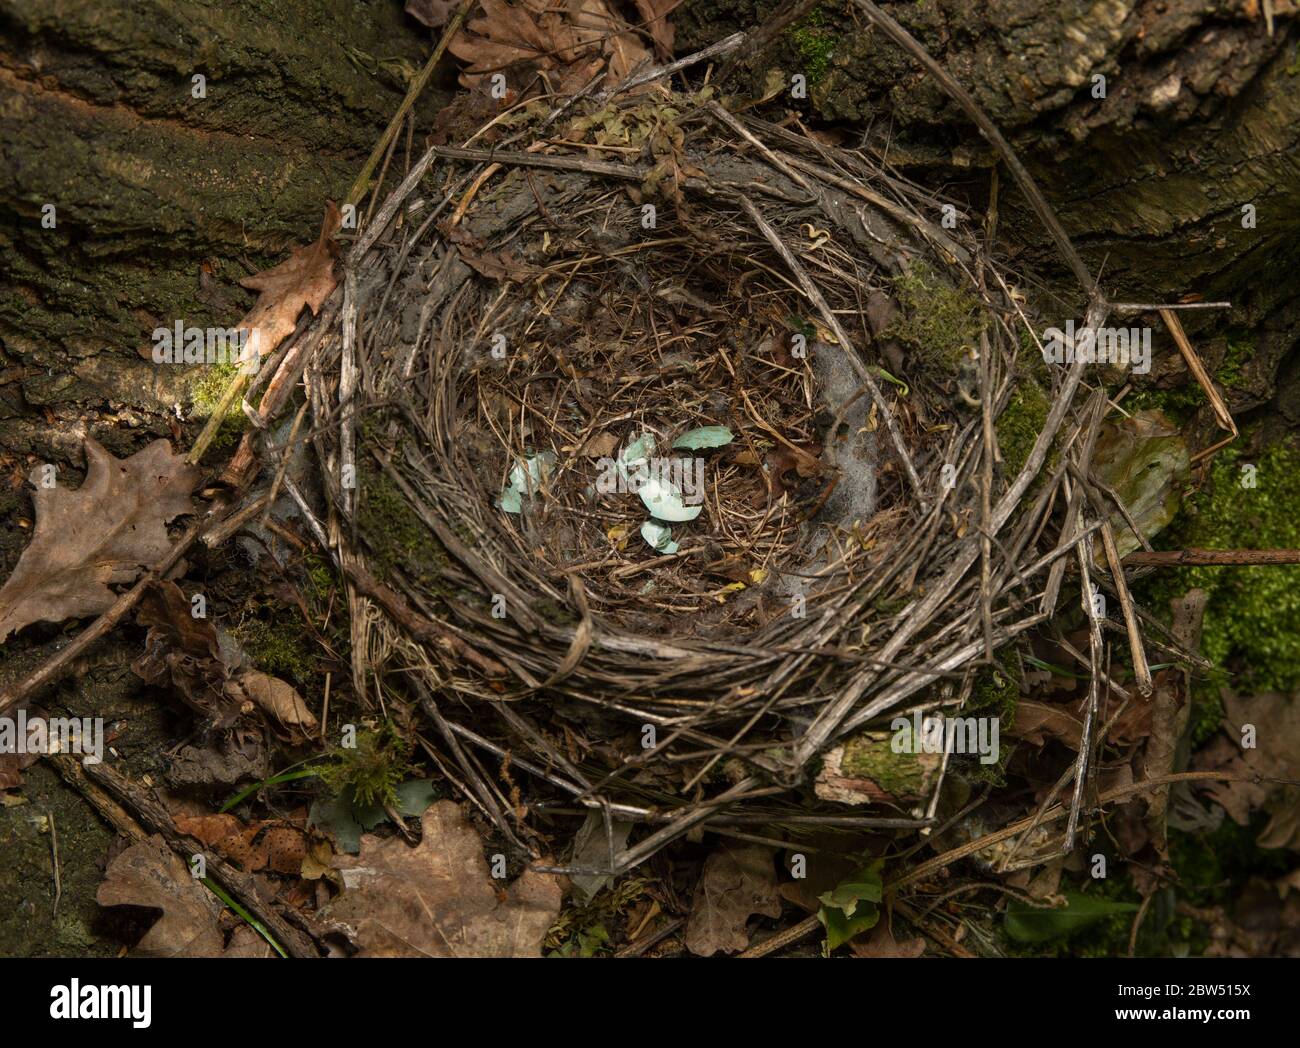 Nest of European Blackbird,Turdus merula, built into fork of tree with broken egg shells, Brent Reservoir, Welsh Harp Reservoir, London,United Kingdom Stock Photo